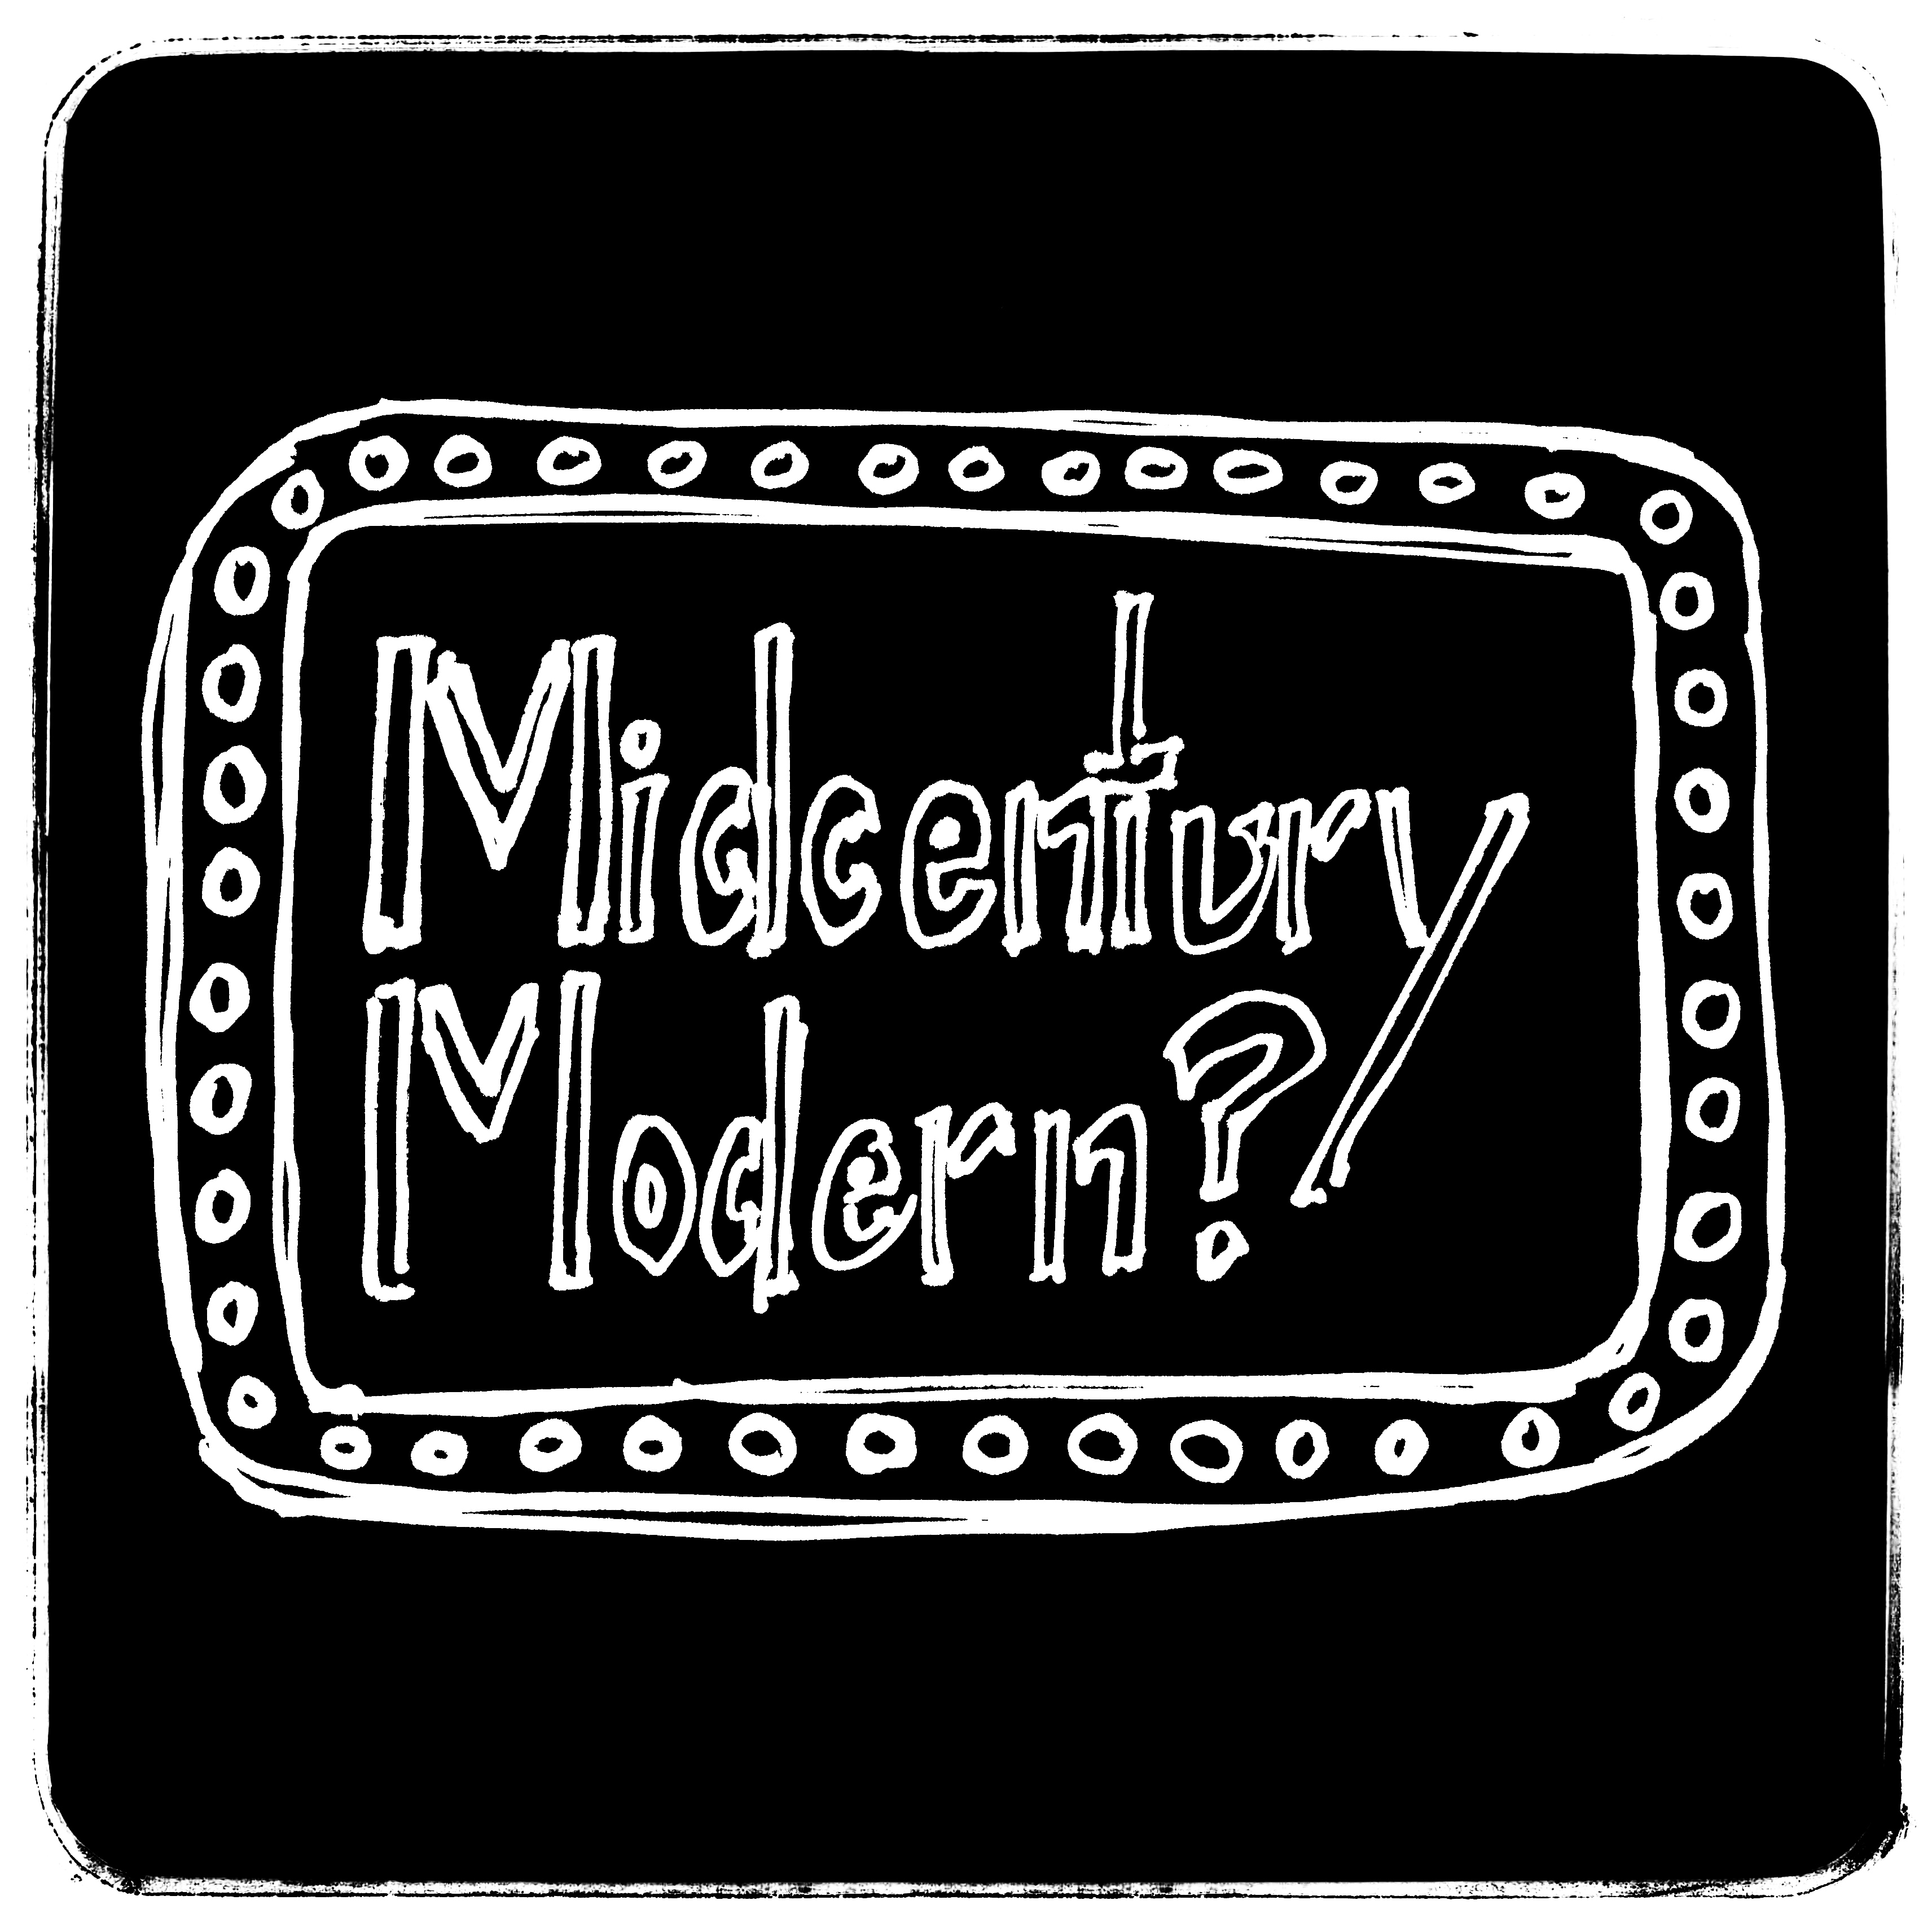 Rebranding Midlife: Mid-century Modern